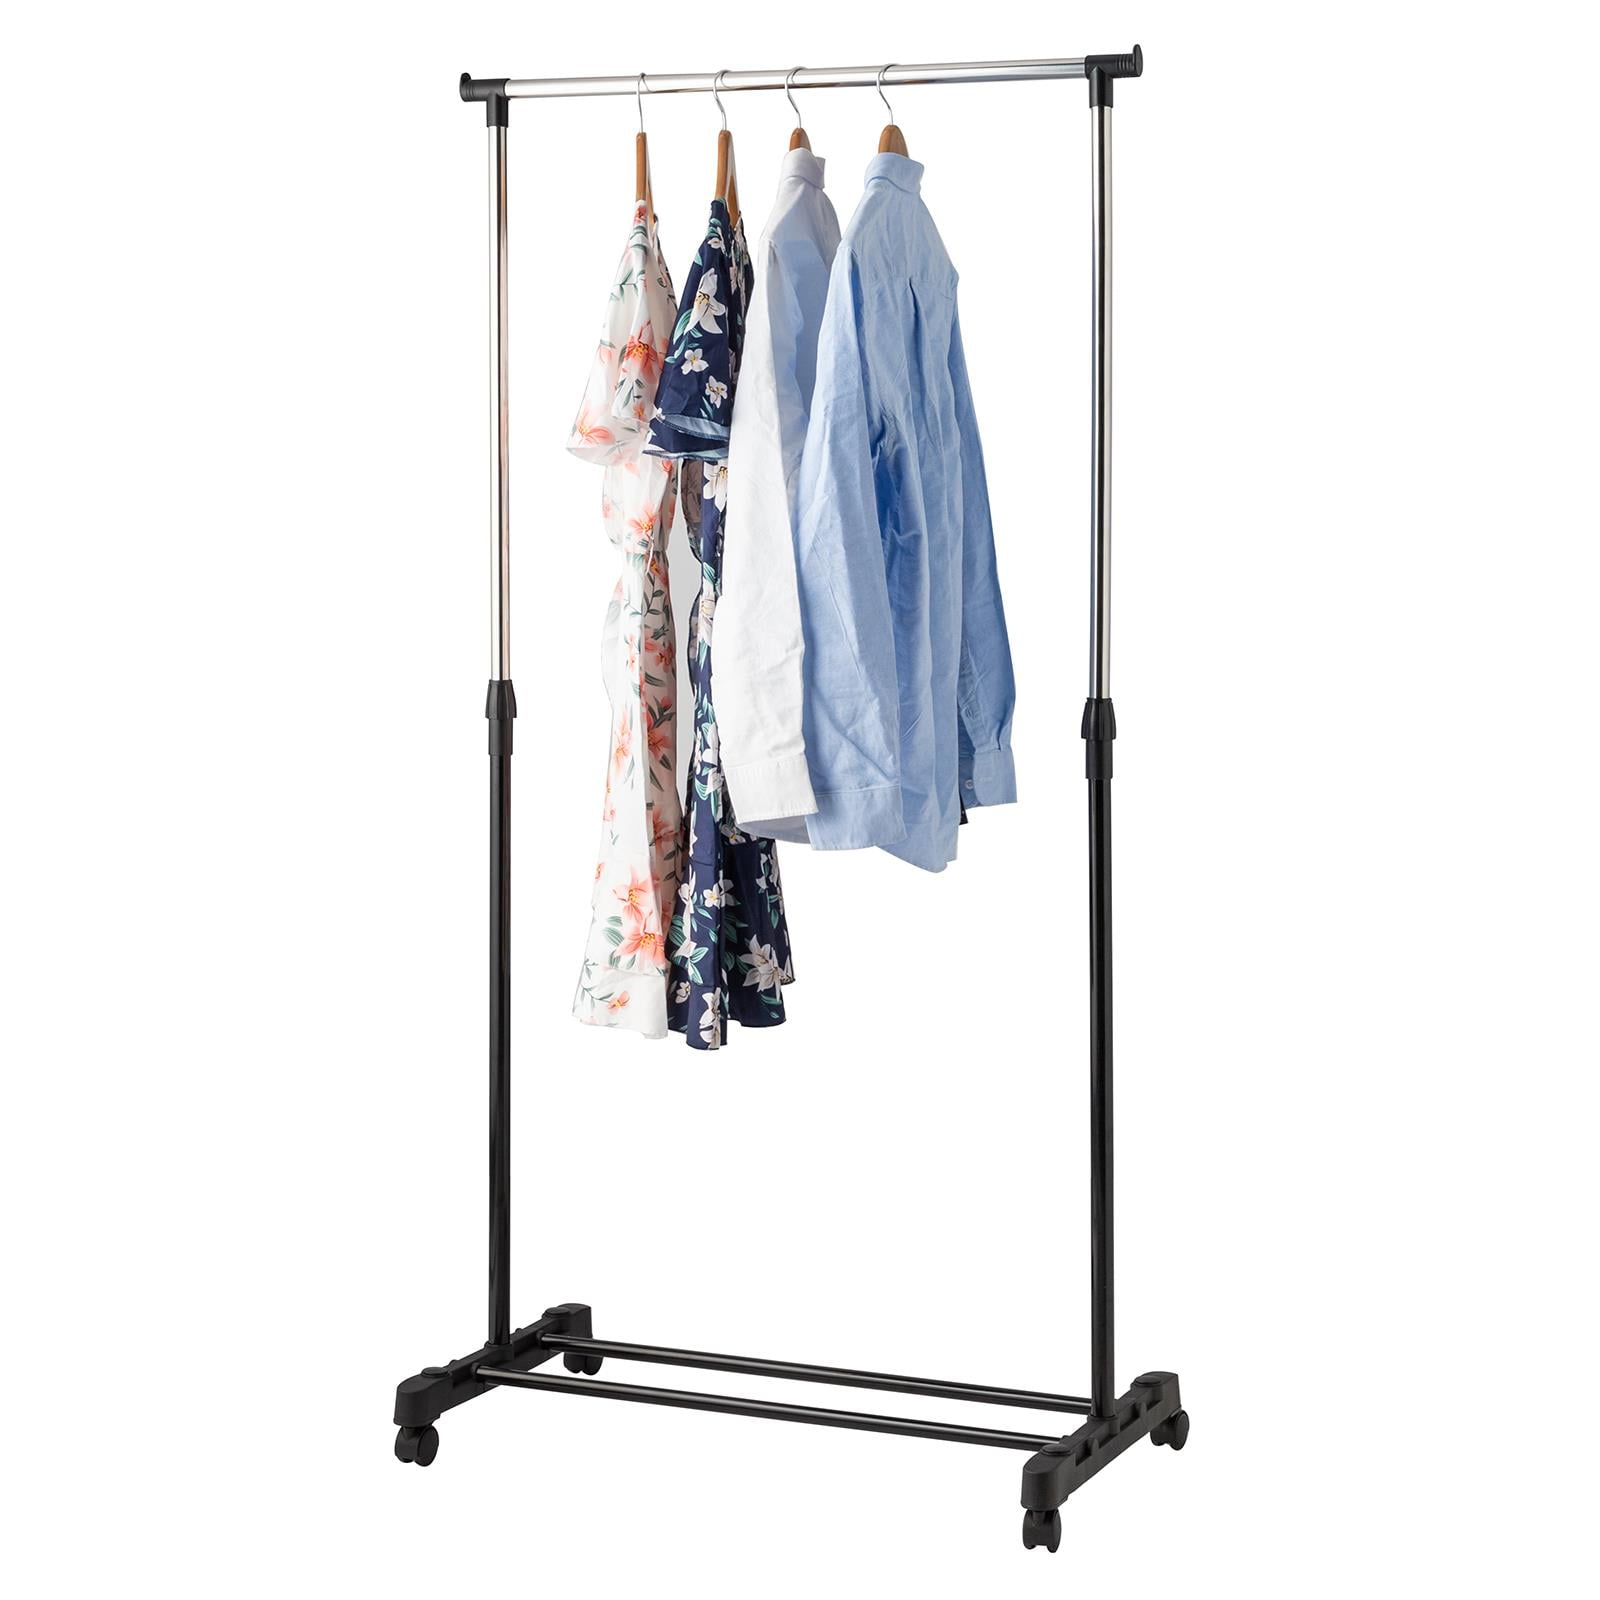 Ktaxon Adjustable Rolling Garment Rack Single Hanging Bar Clothes Hanger